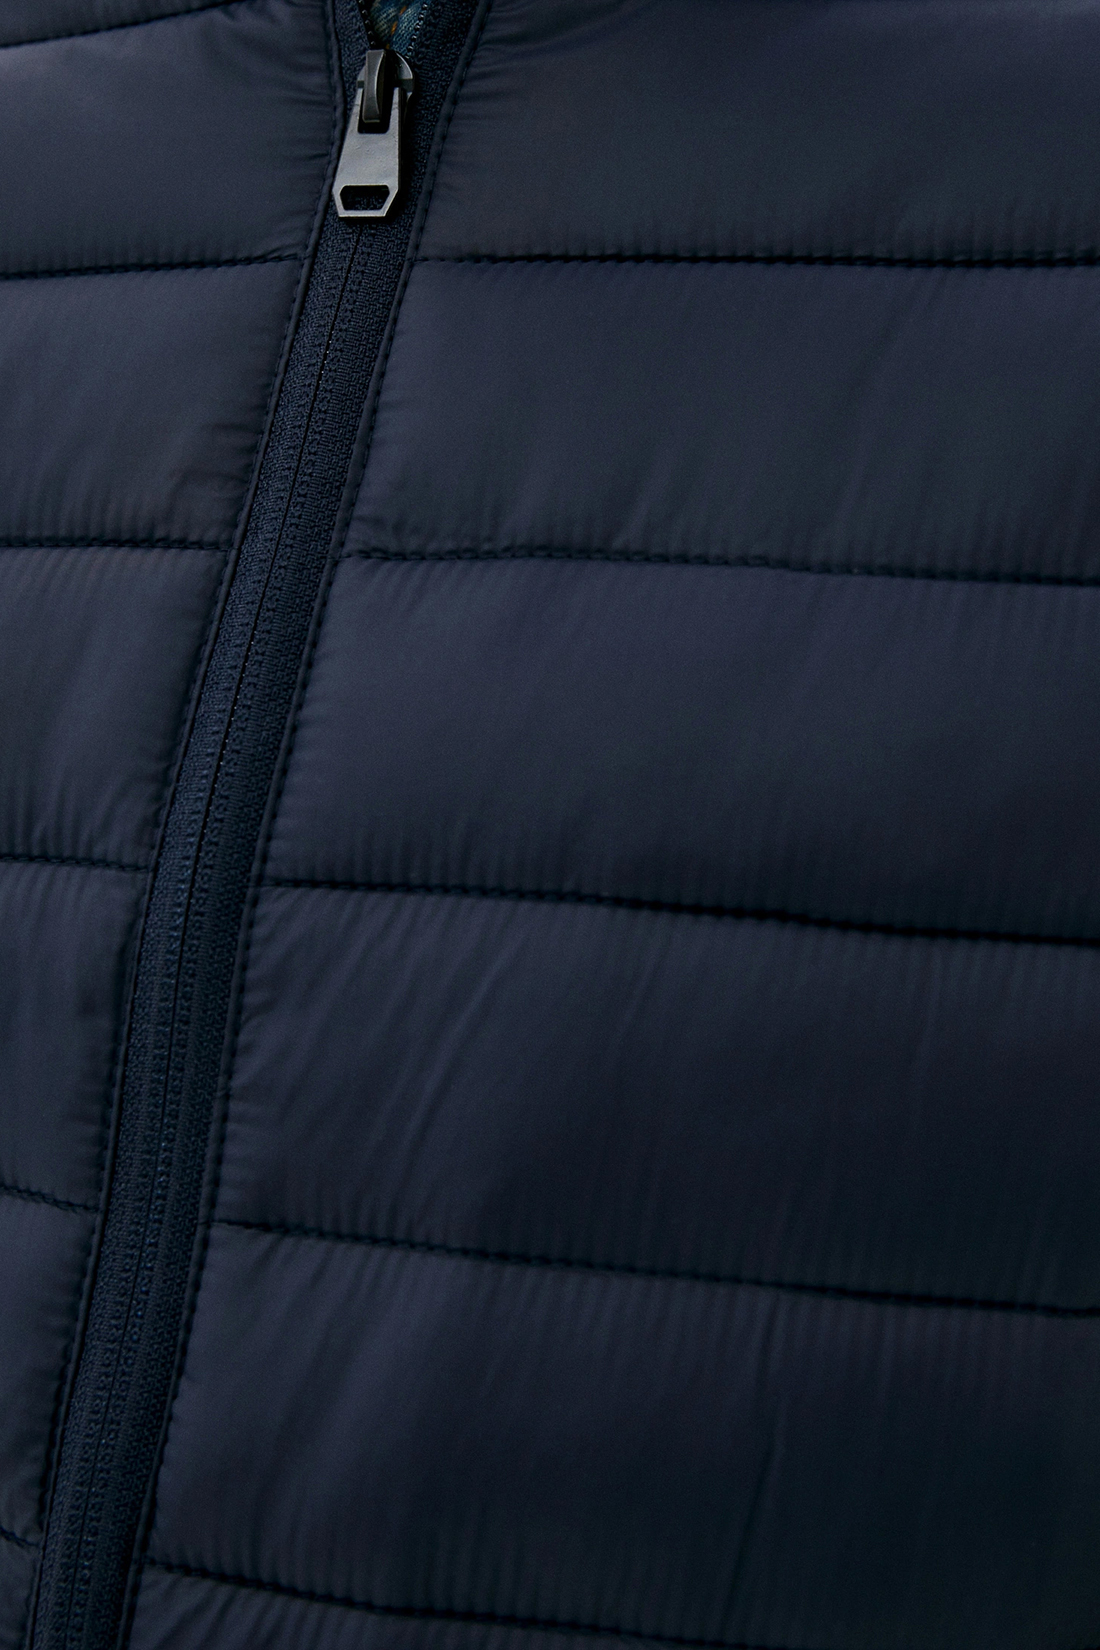 Куртка (Эко пух) (арт. baon B540520), размер XL, цвет синий Куртка (Эко пух) (арт. baon B540520) - фото 3